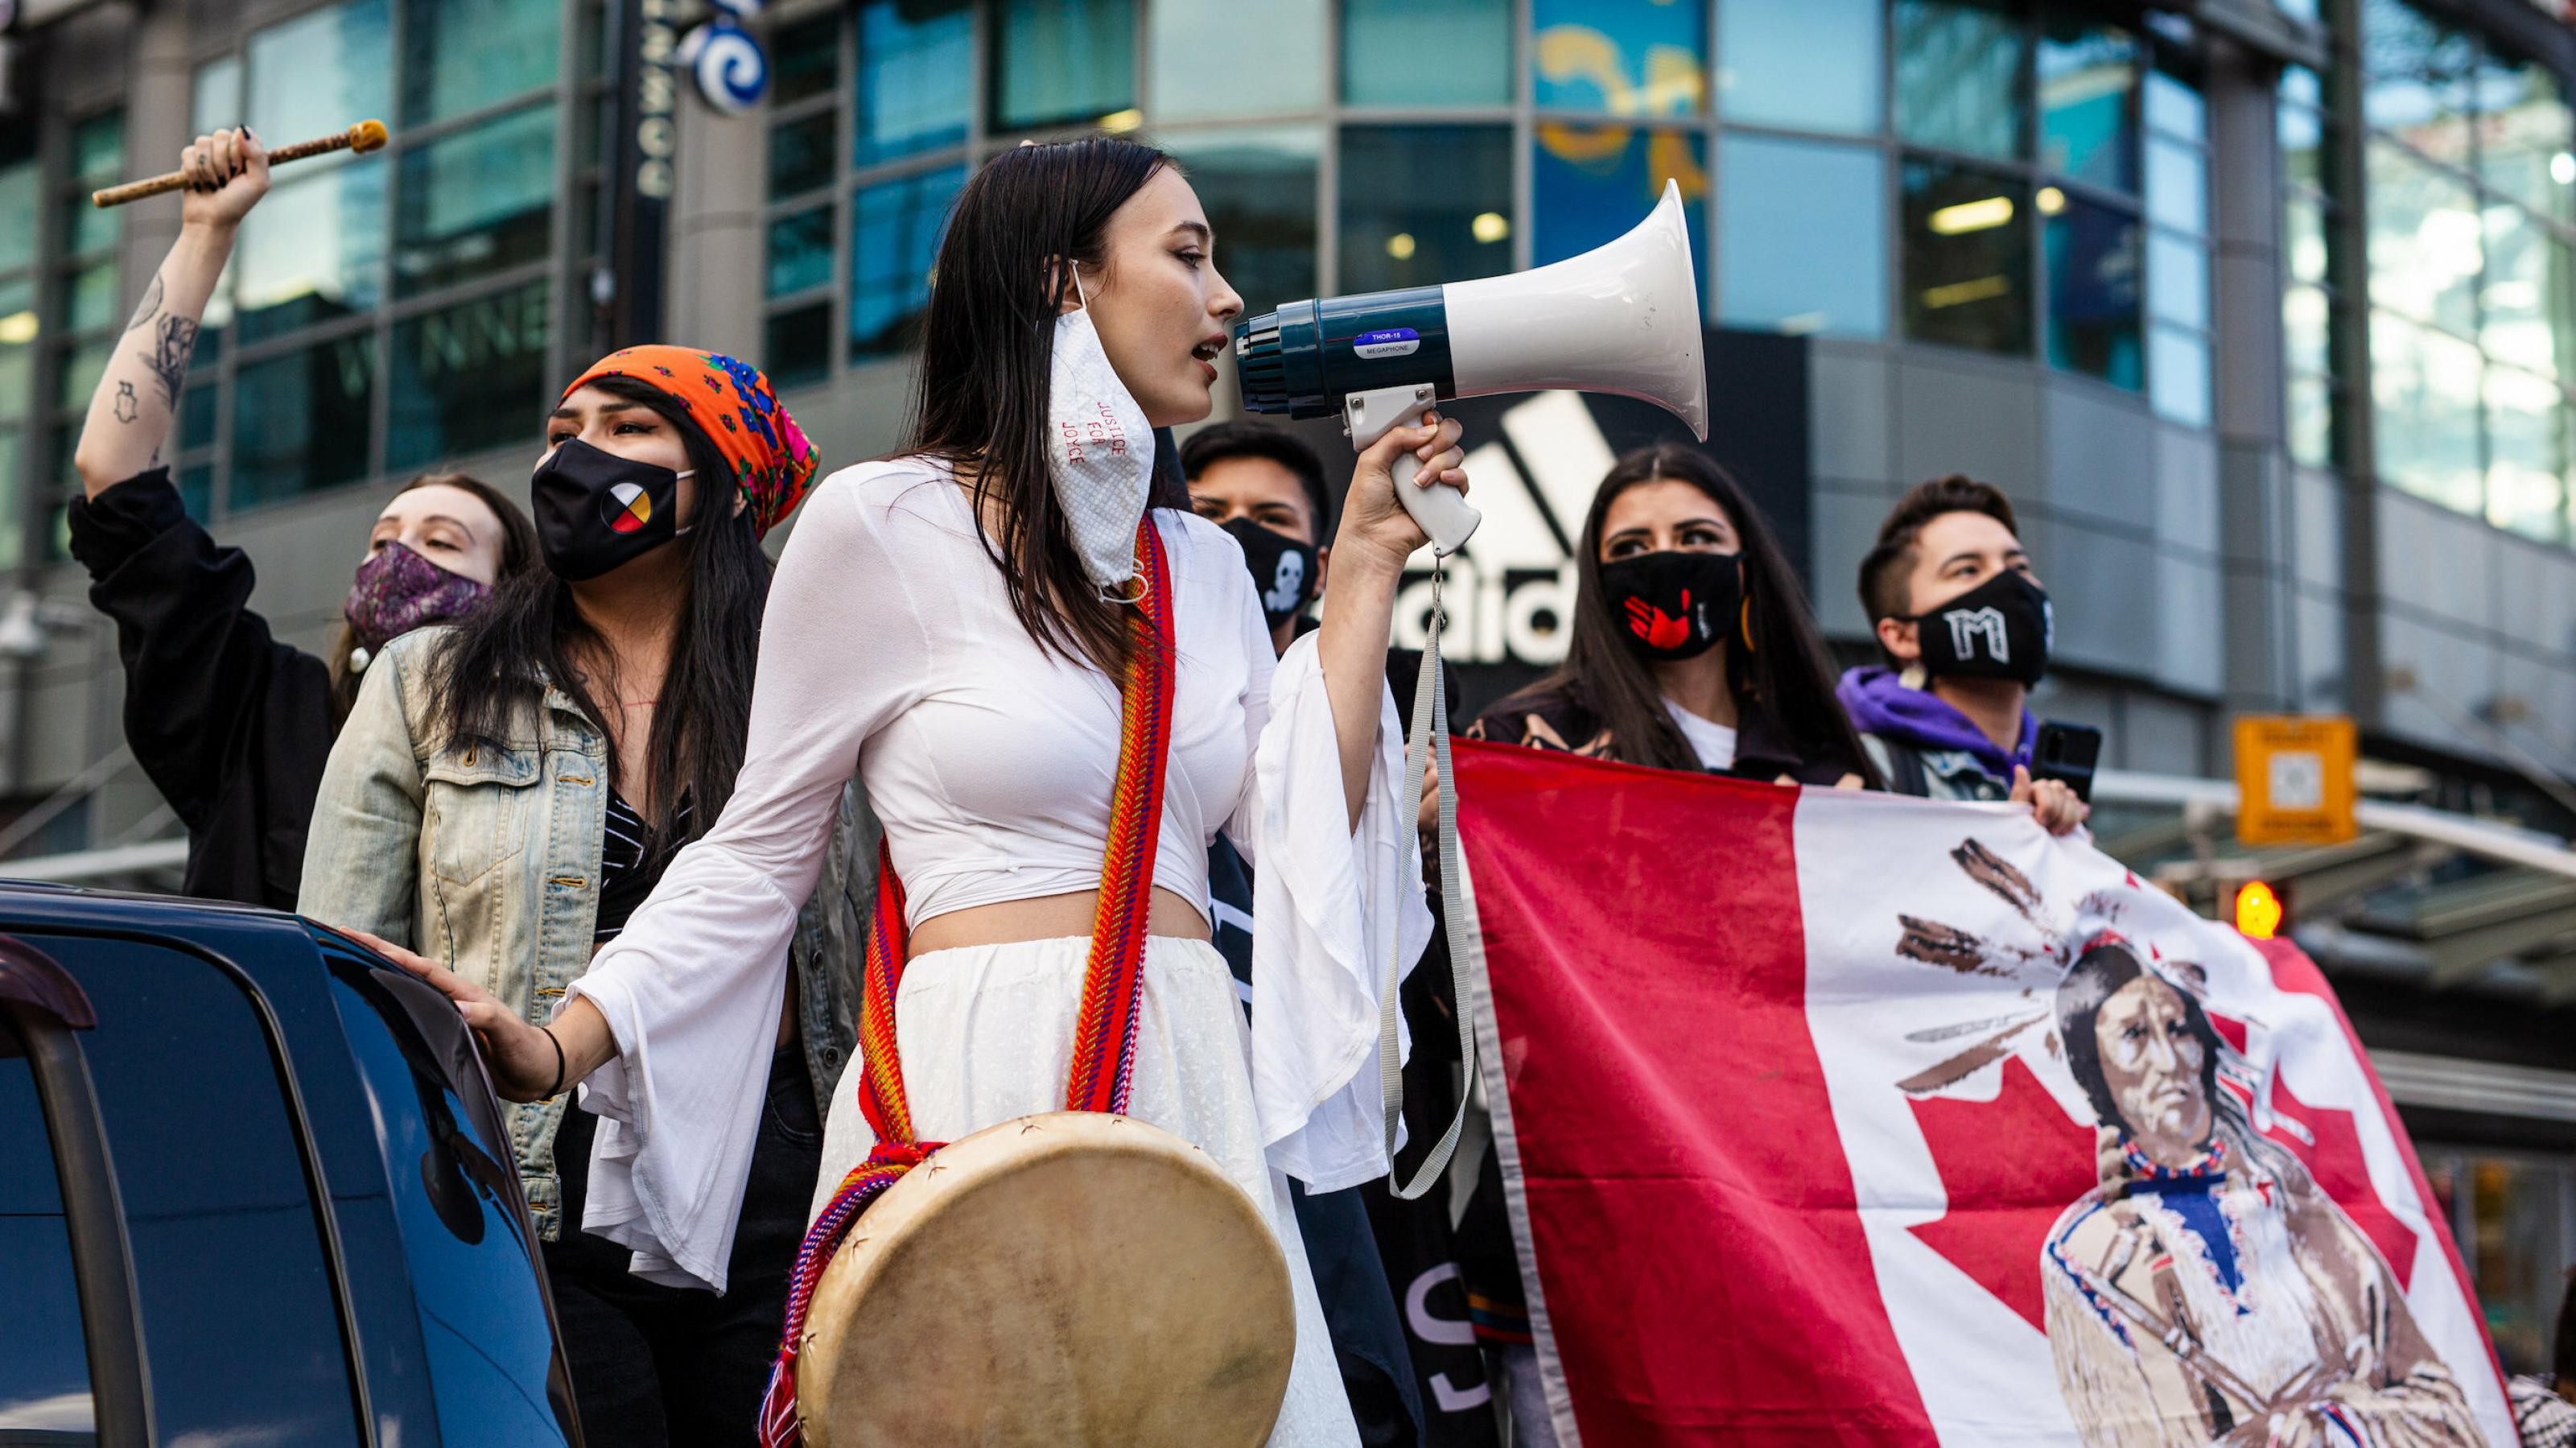 Junge Demonstrantinnen der kanadischen Indigenen stehen in einer Gruppe und halten ein Transparent mit der kanadischen Flagge, auf der ein indigener Häuptling zu sehen ist. Eine junge Frau in weißem Kleid spricht in ein Megafon.